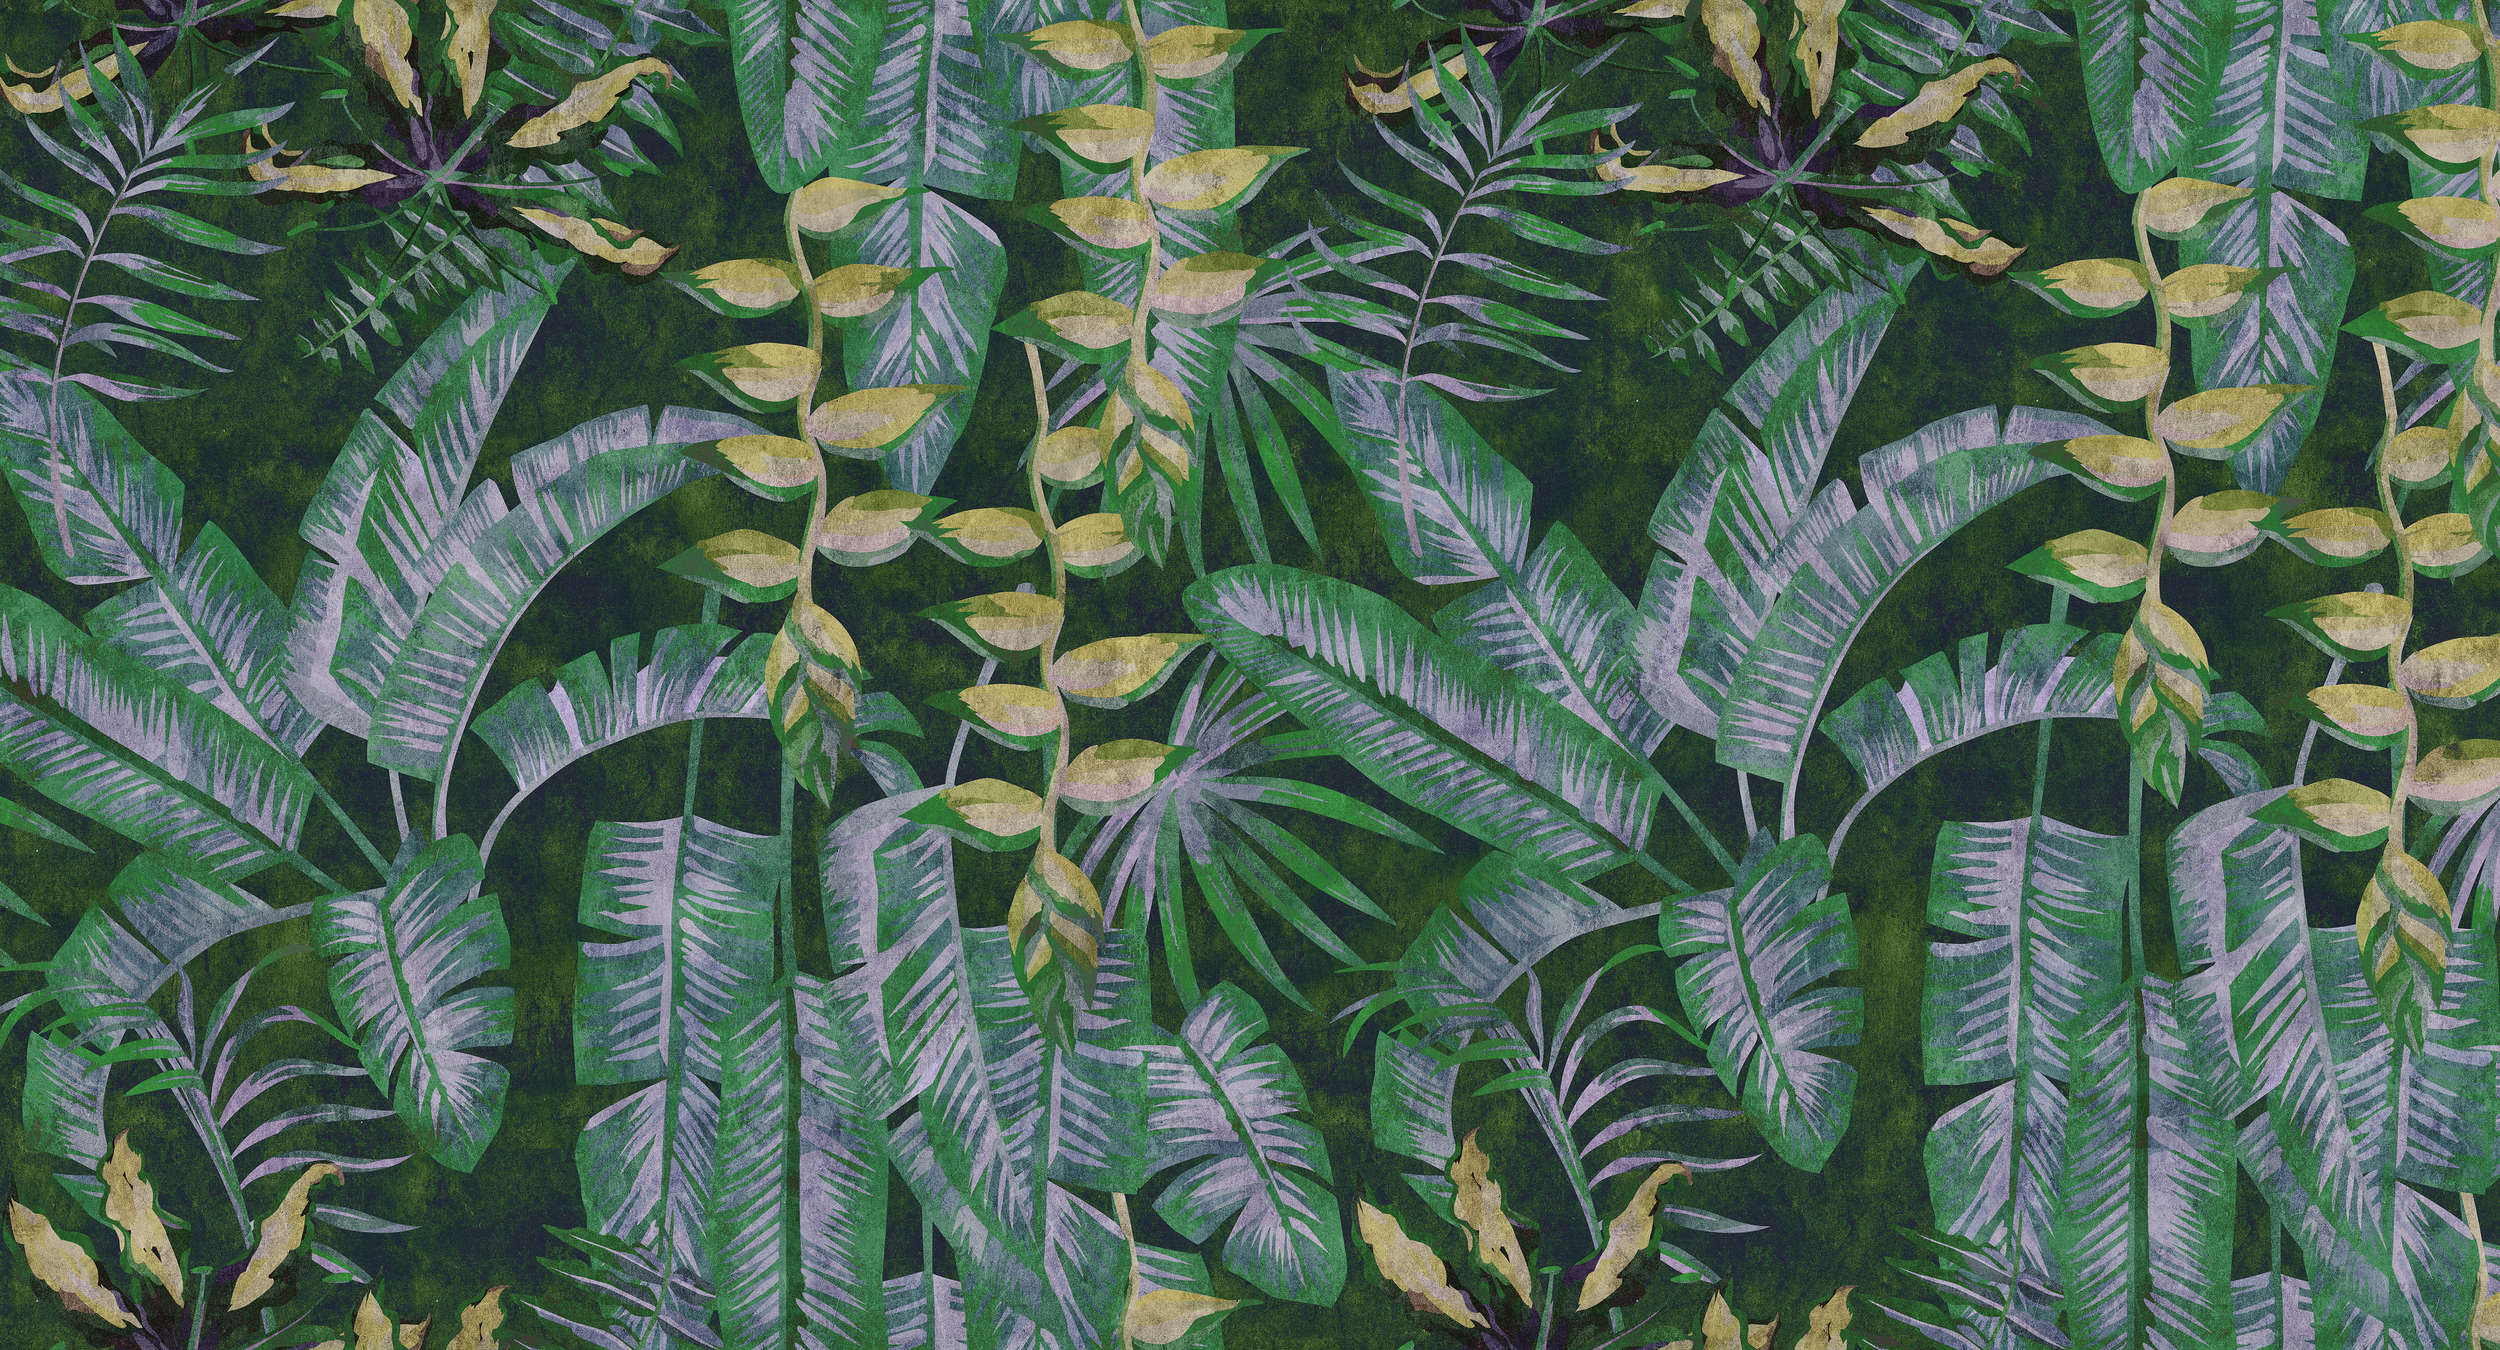             Tropicana 2 - papel pintado con impresión digital de plantas tropicales en estructura de papel secante - amarillo, verde | no tejido liso mate
        